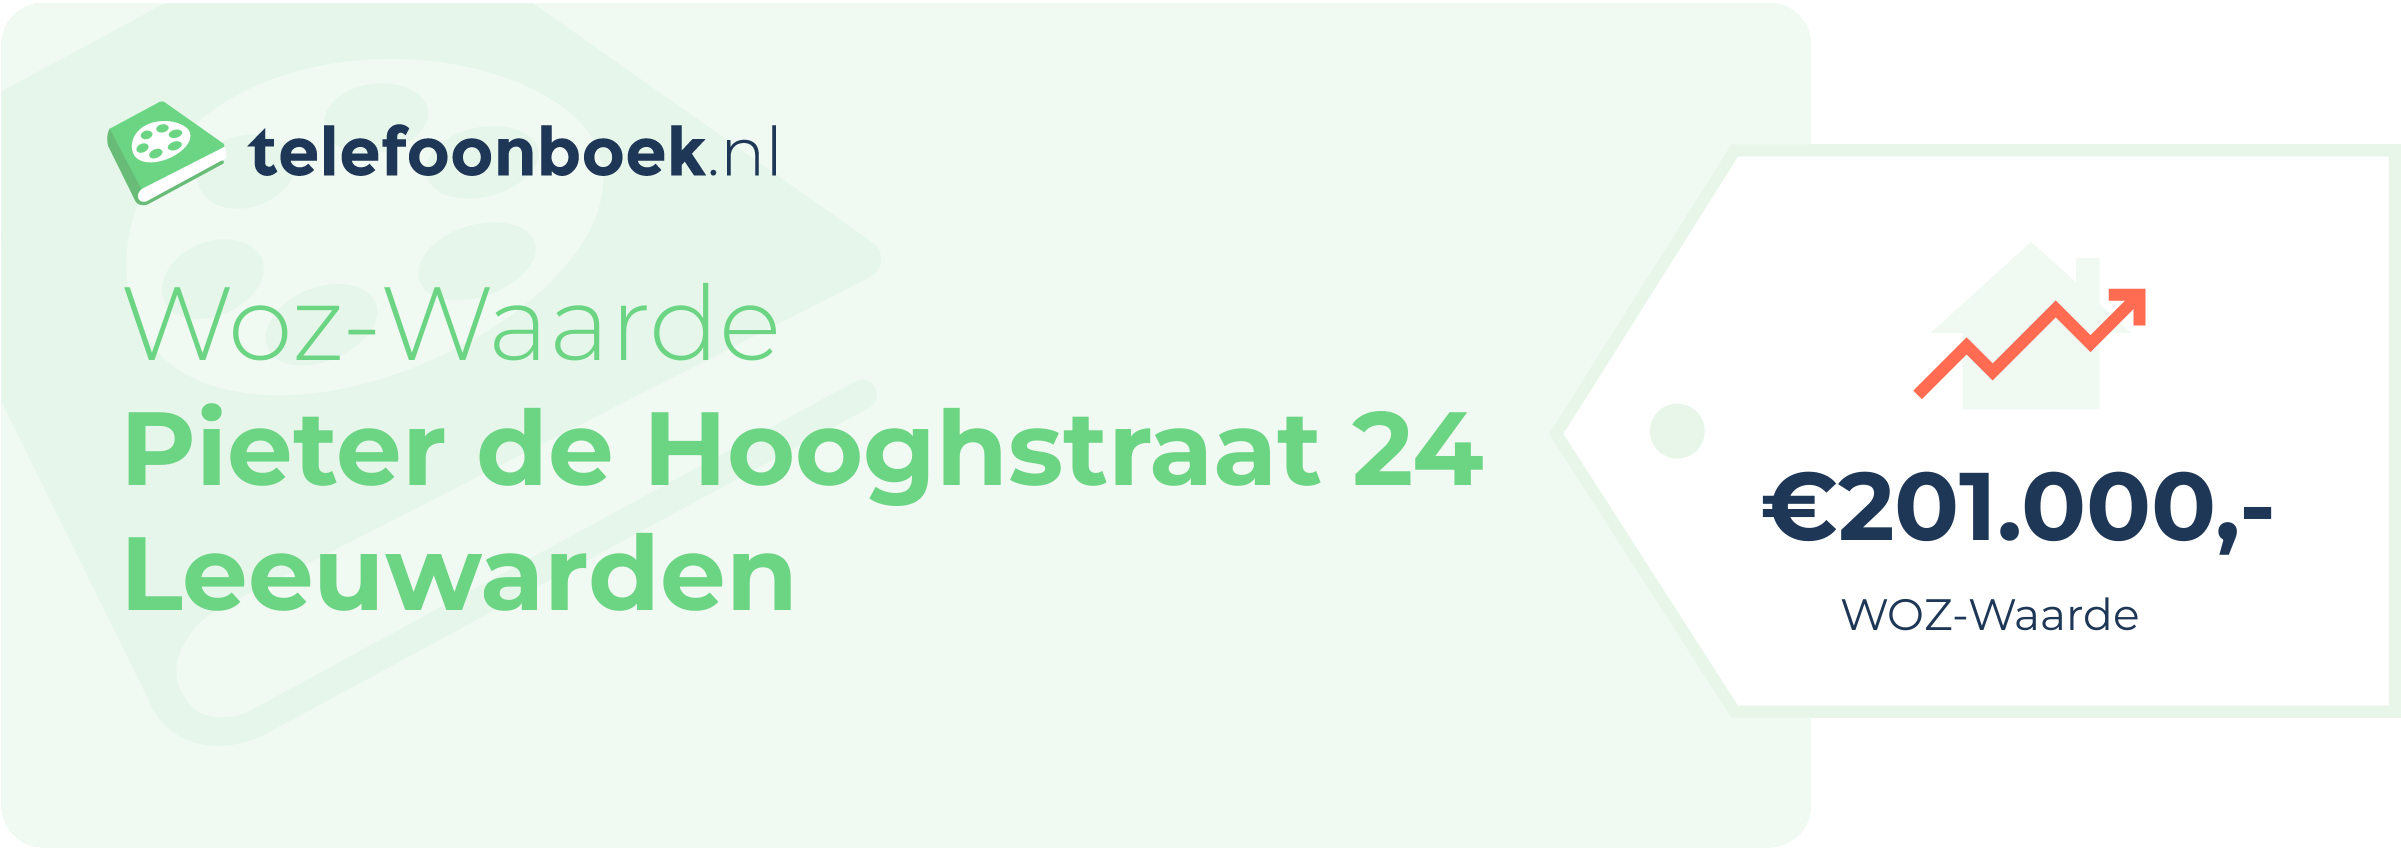 WOZ-waarde Pieter De Hooghstraat 24 Leeuwarden